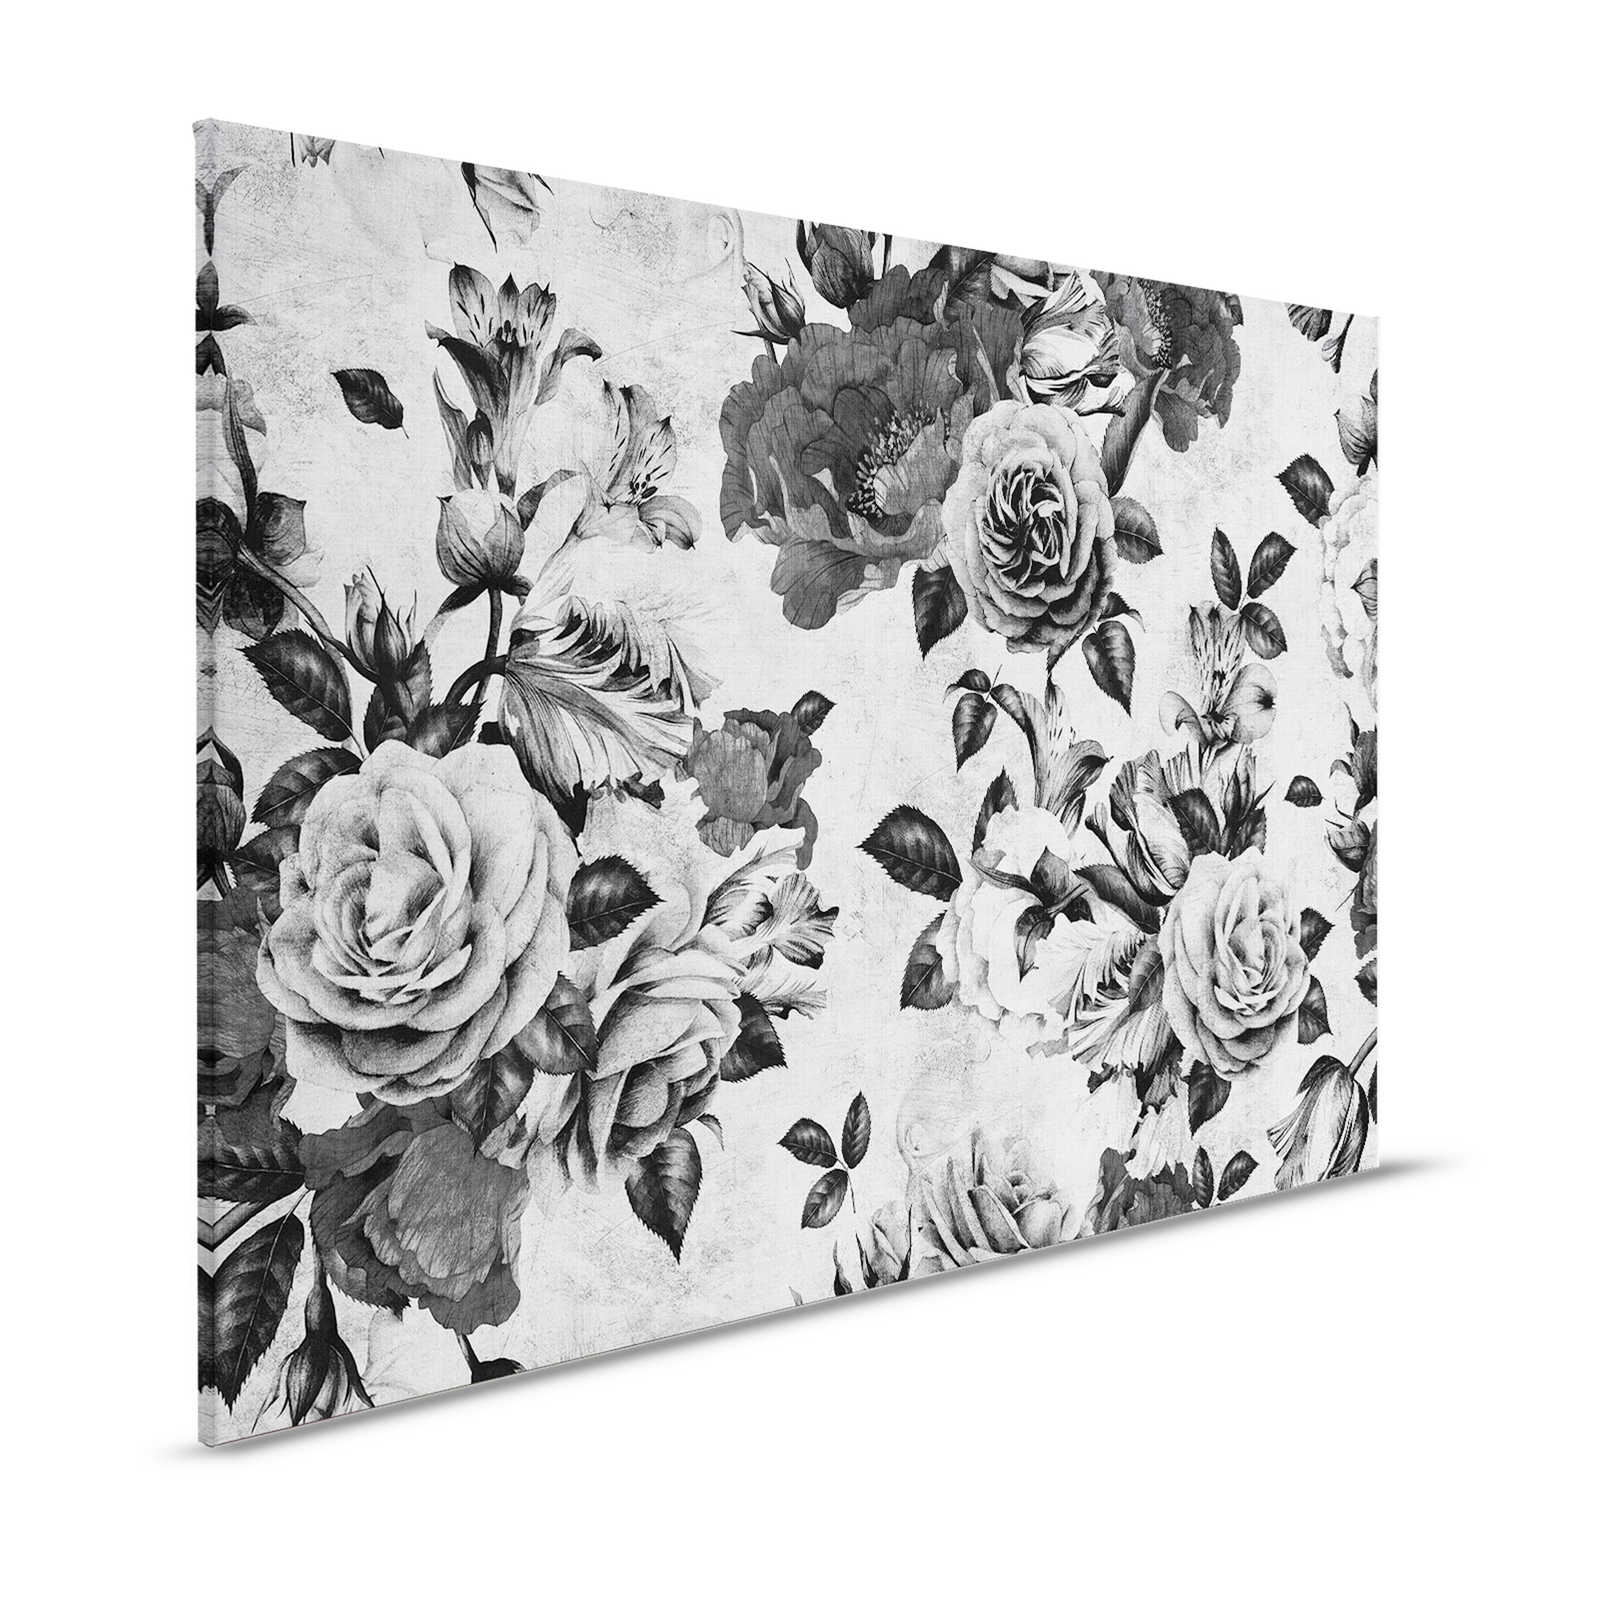 Rosa española 1 - Pintura sobre lienzo Rosas con flores blancas y negras - 1,20 m x 0,80 m
